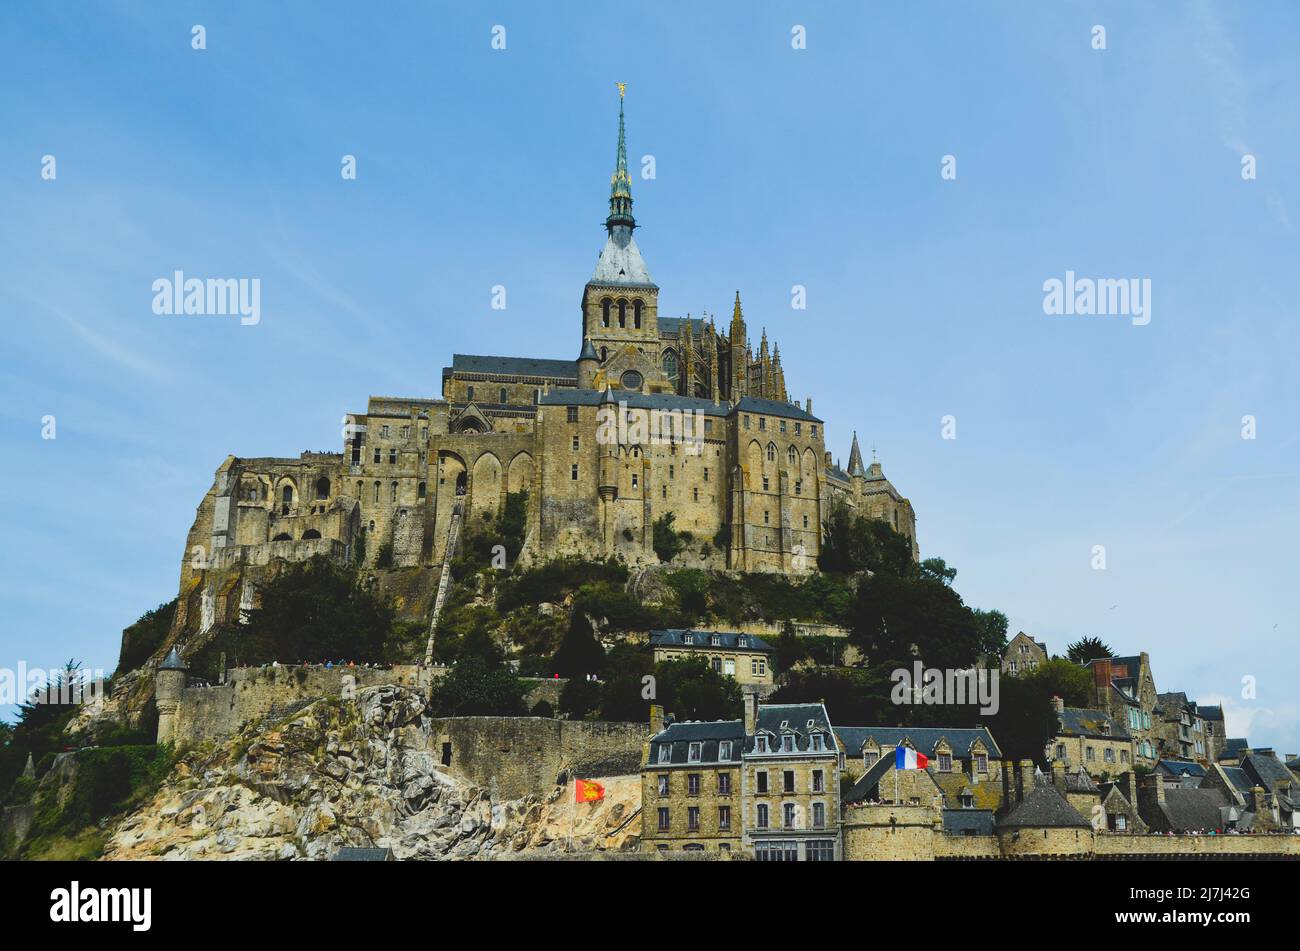 Mont-Saint-Michel en France, avec des bâtiments historiques, des murs et une église construite sur une île marémotrice. Les bâtiments layés s'élèvent à 262 mètres jusqu'à Abby. Banque D'Images